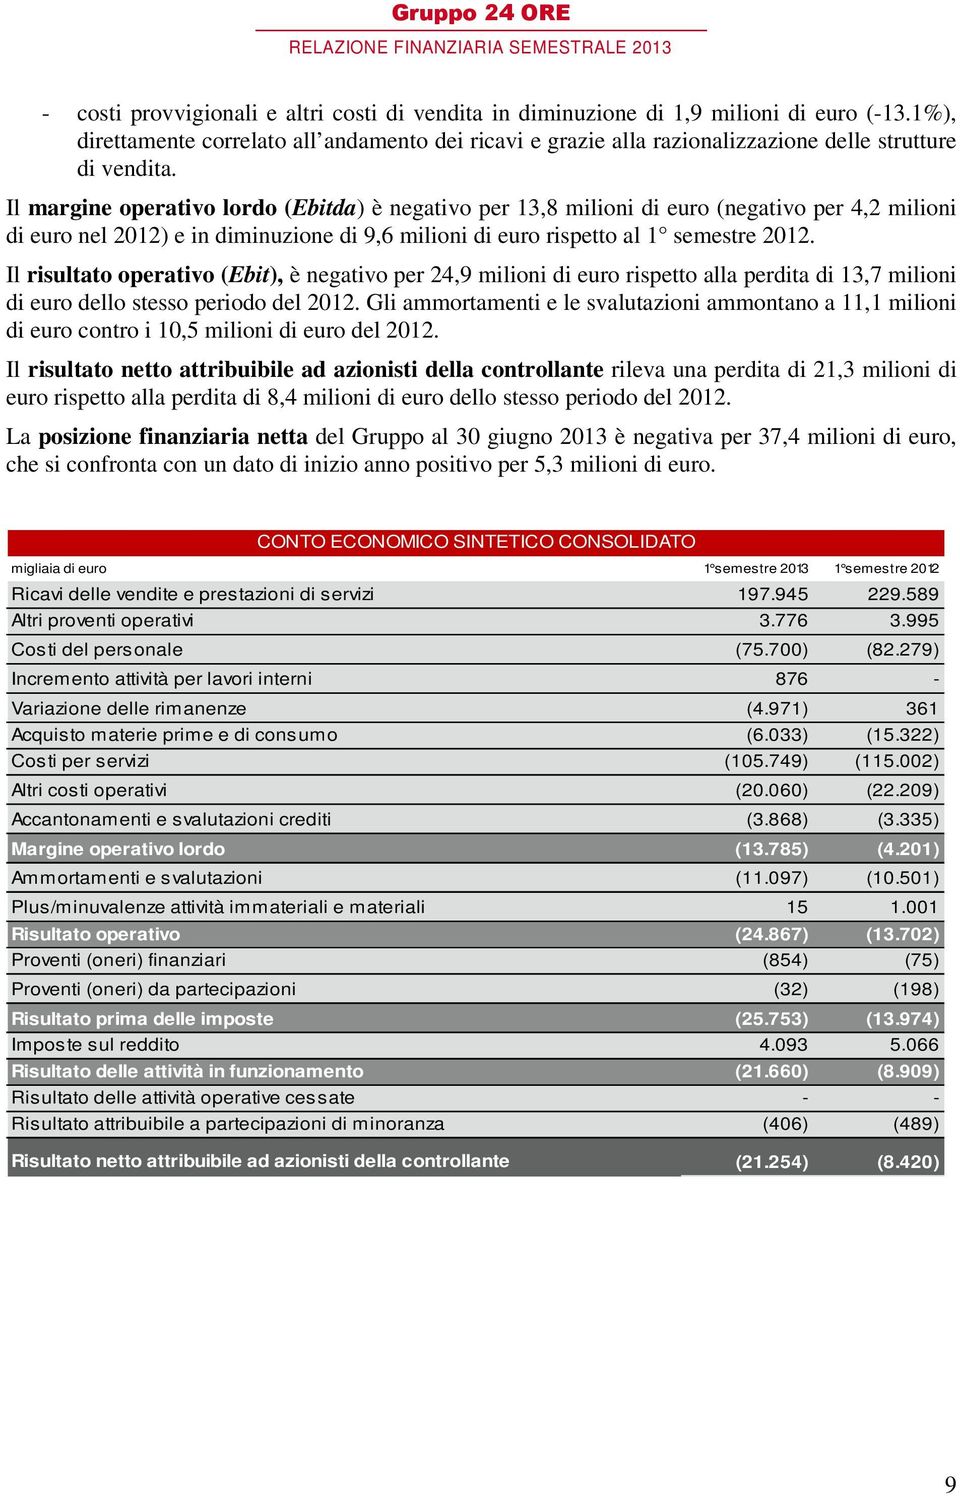 Il margine operativo lordo (Ebitda) è negativo per 13,8 milioni di euro (negativo per 4,2 milioni di euro nel 2012) e in diminuzione di 9,6 milioni di euro rispetto al 1 semestre 2012.